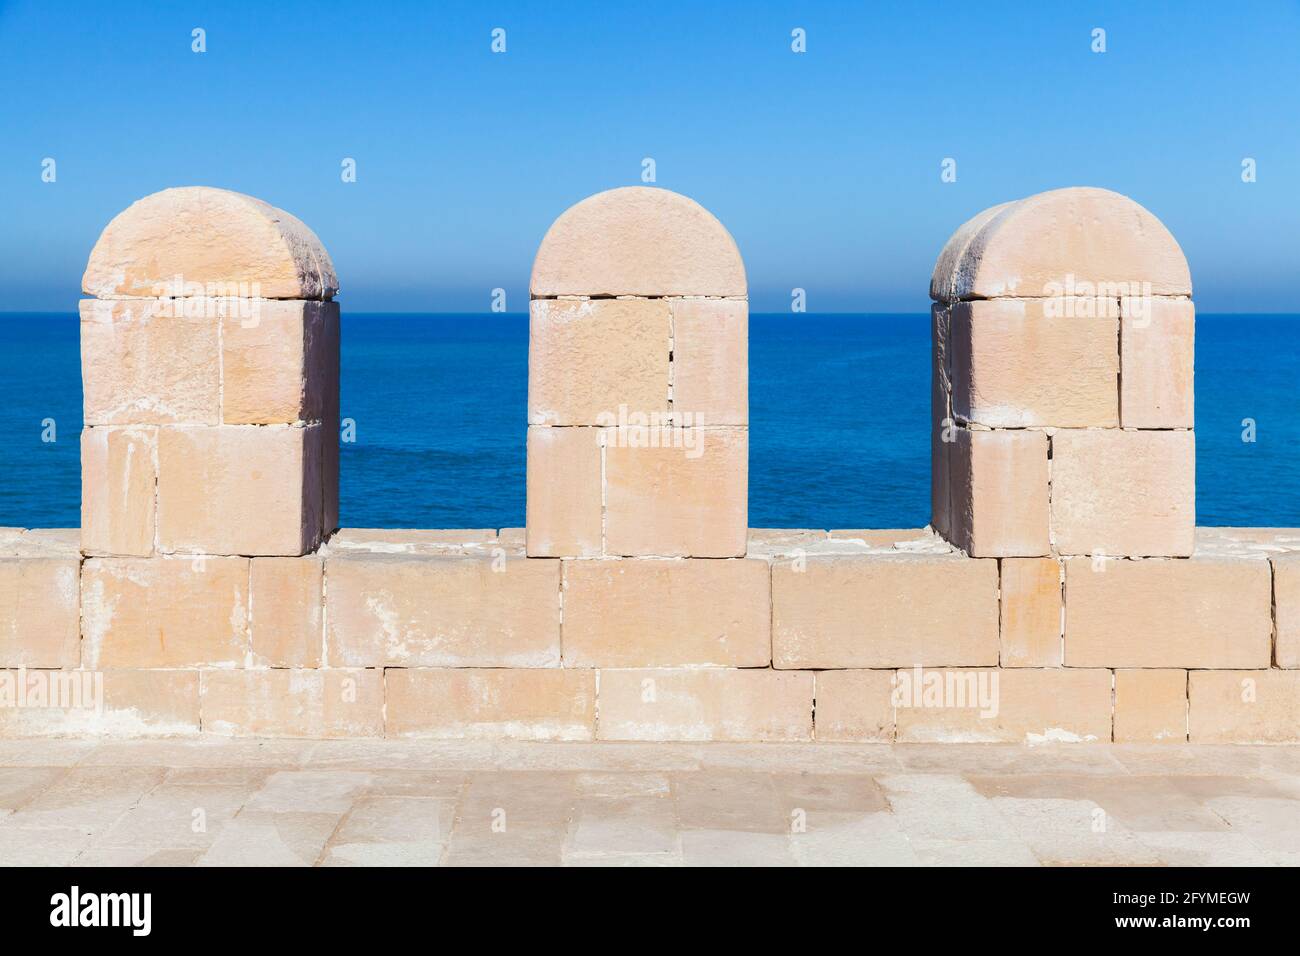 Alte Befestigungsmauer. Die Zitadelle von Qaitbay oder die Festung von Qaitbay, eine Verteidigungsfestung aus dem 15. Jahrhundert an der Mittelmeerküste. It Stockfoto